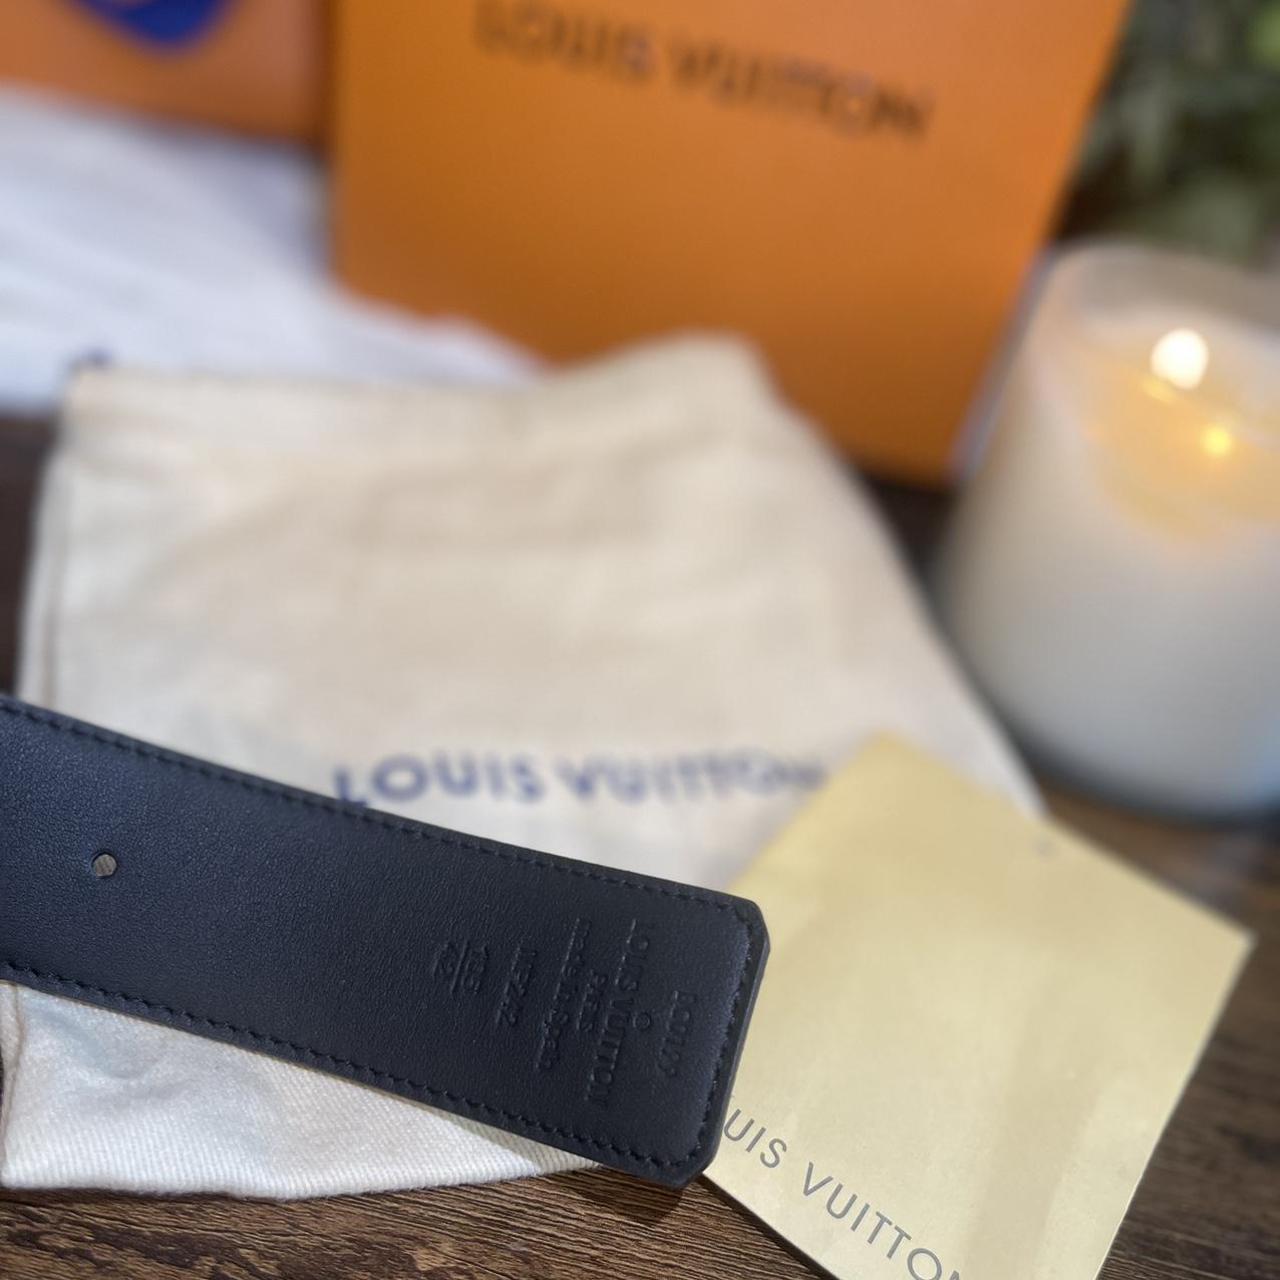 Supreme x Louis Vuitton Belt from Paris Store Size: - Depop